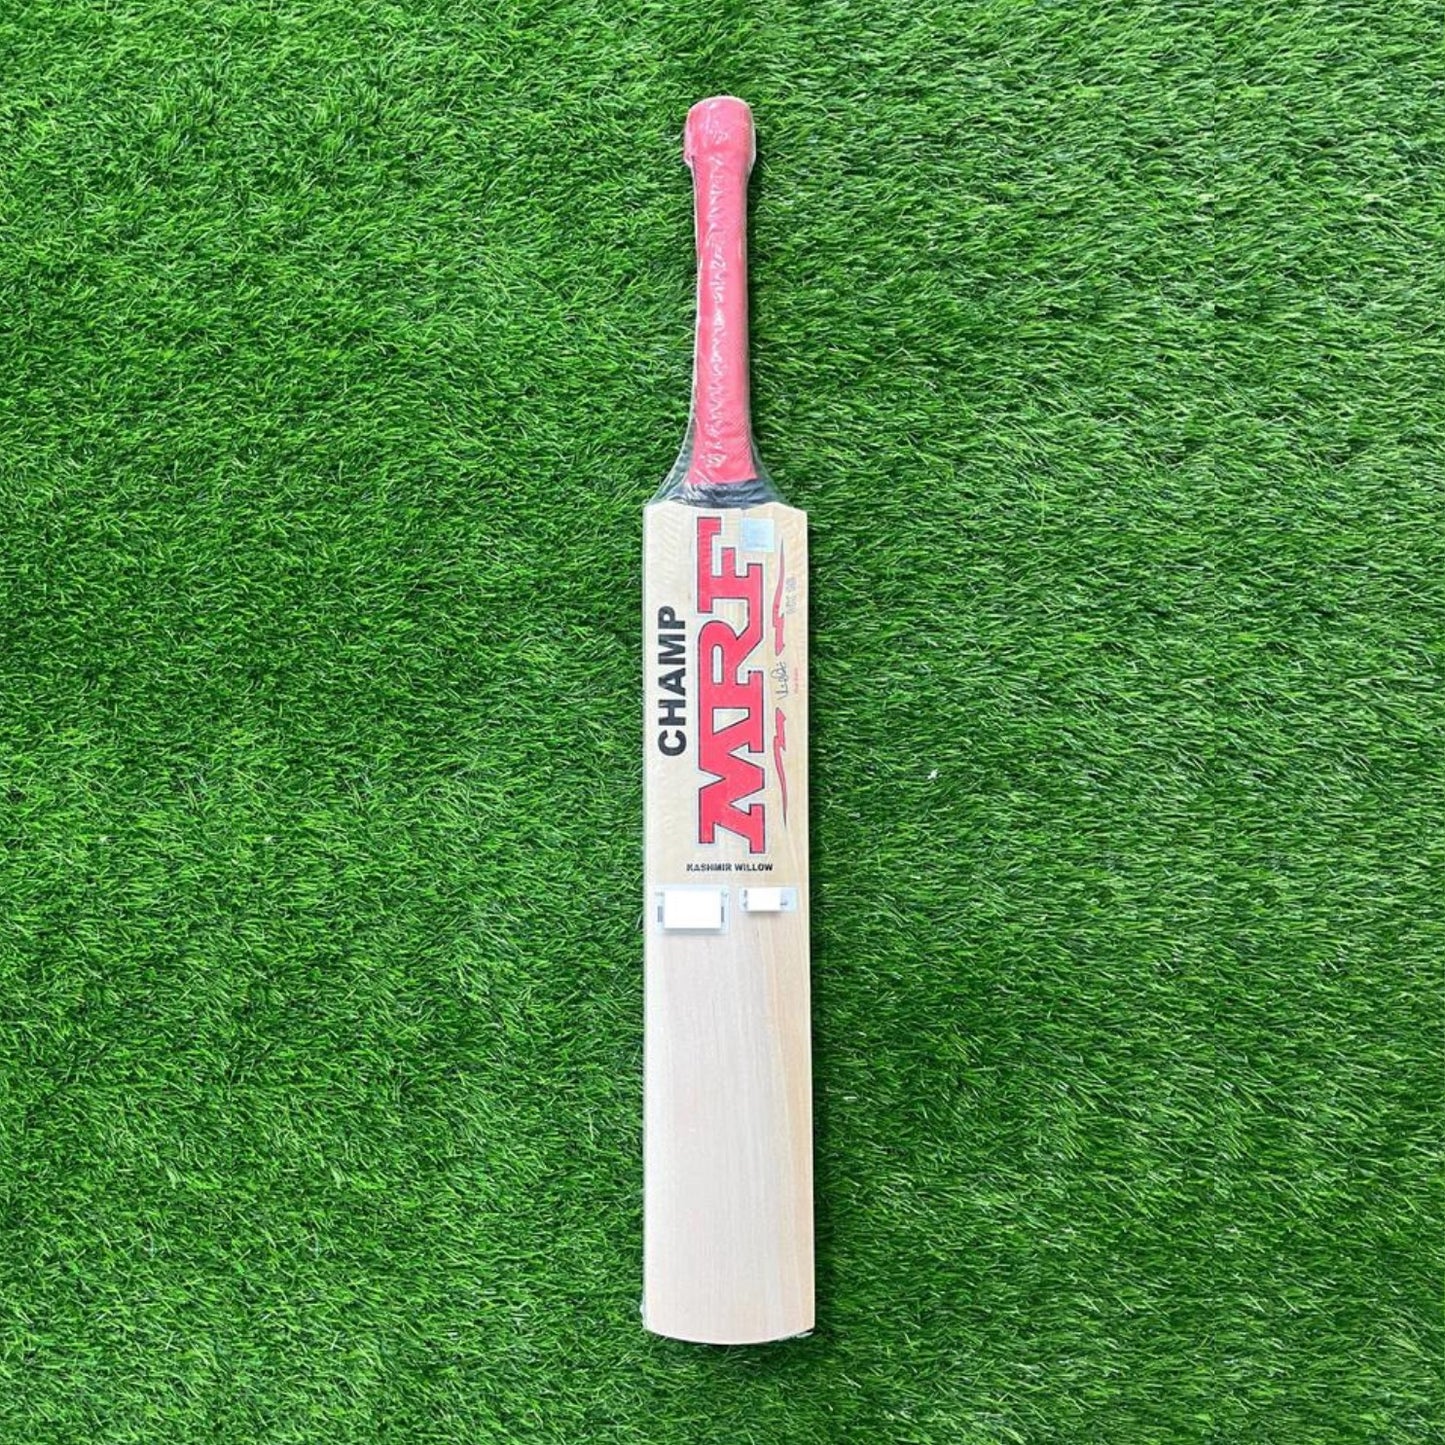 MRF KW CHAMP Kashmir Willow Cricket Bat - SM